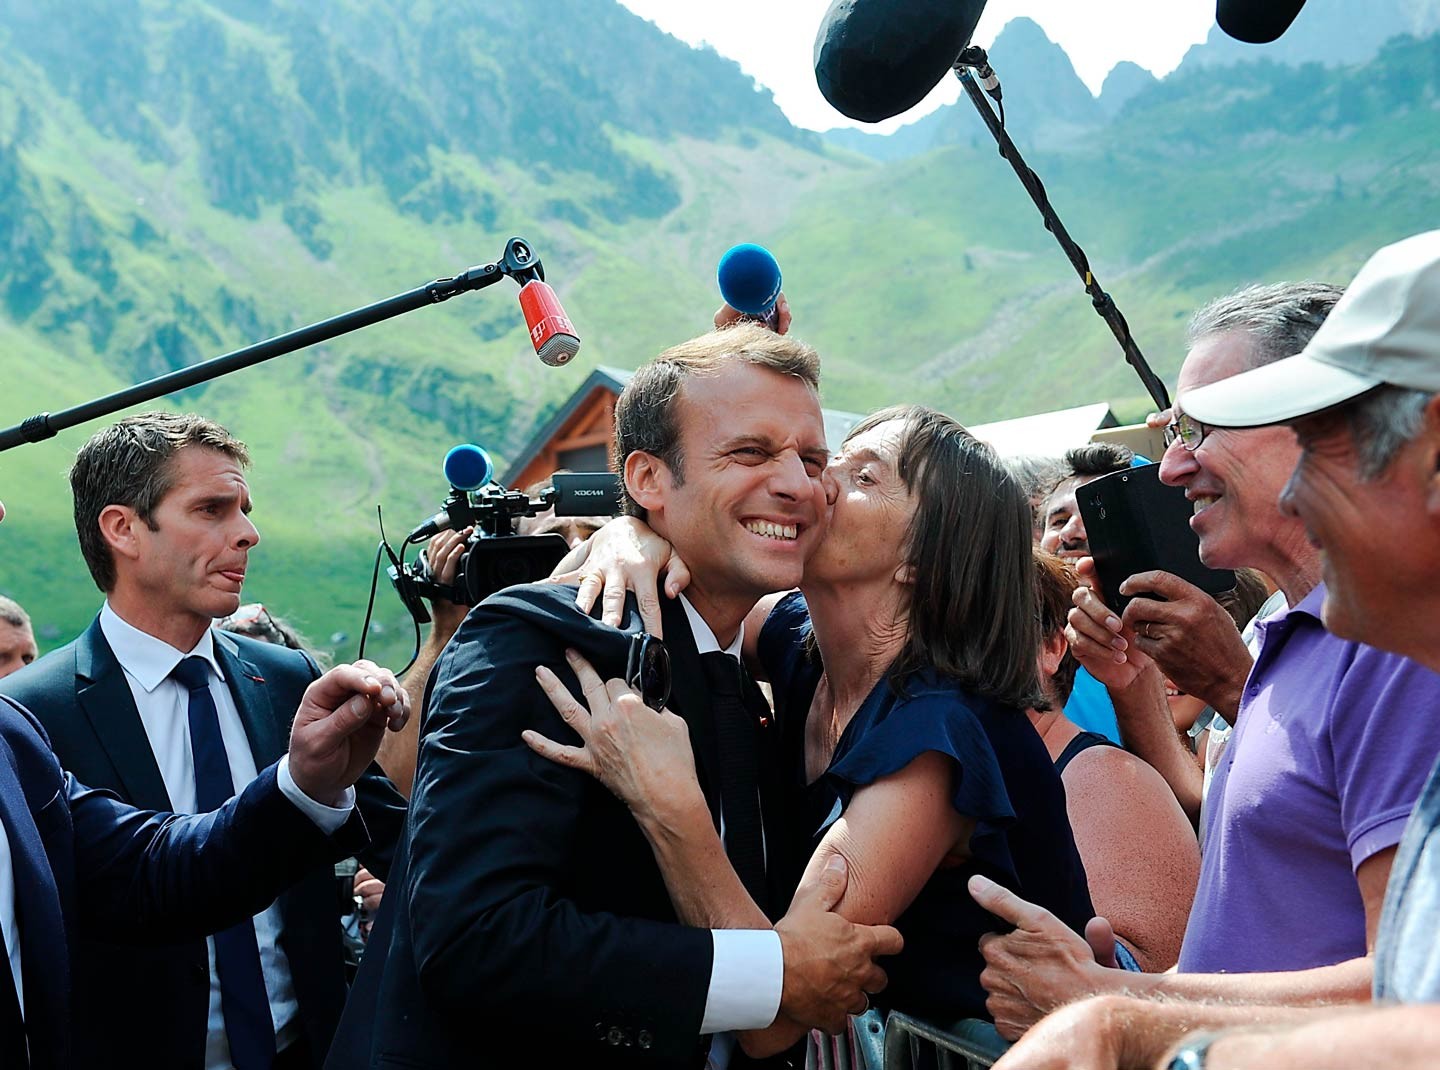 Benallagate : Macron passe l’été en scandales